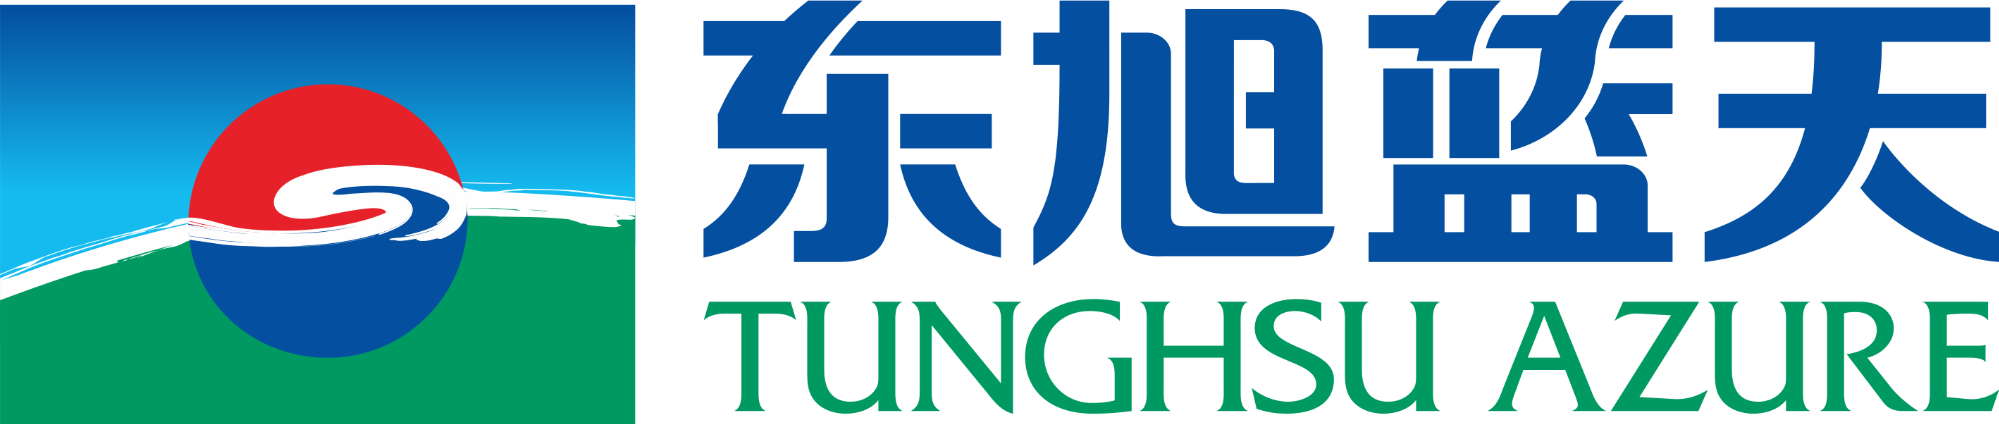 Tunghsu Azure